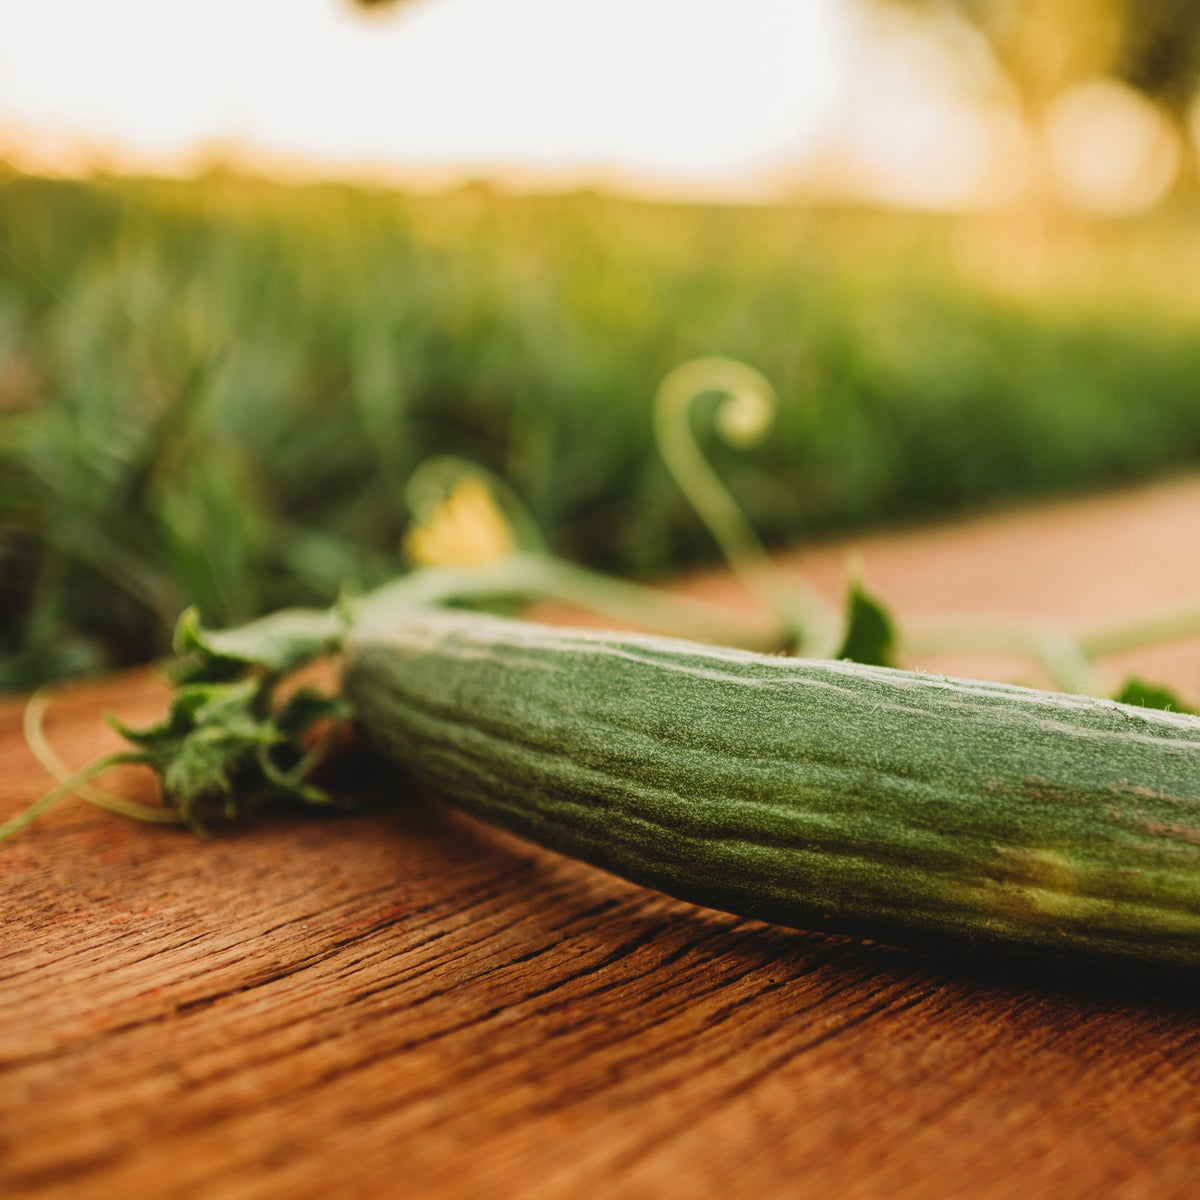 Armenian Cucumber (Yard Long Cucumber)